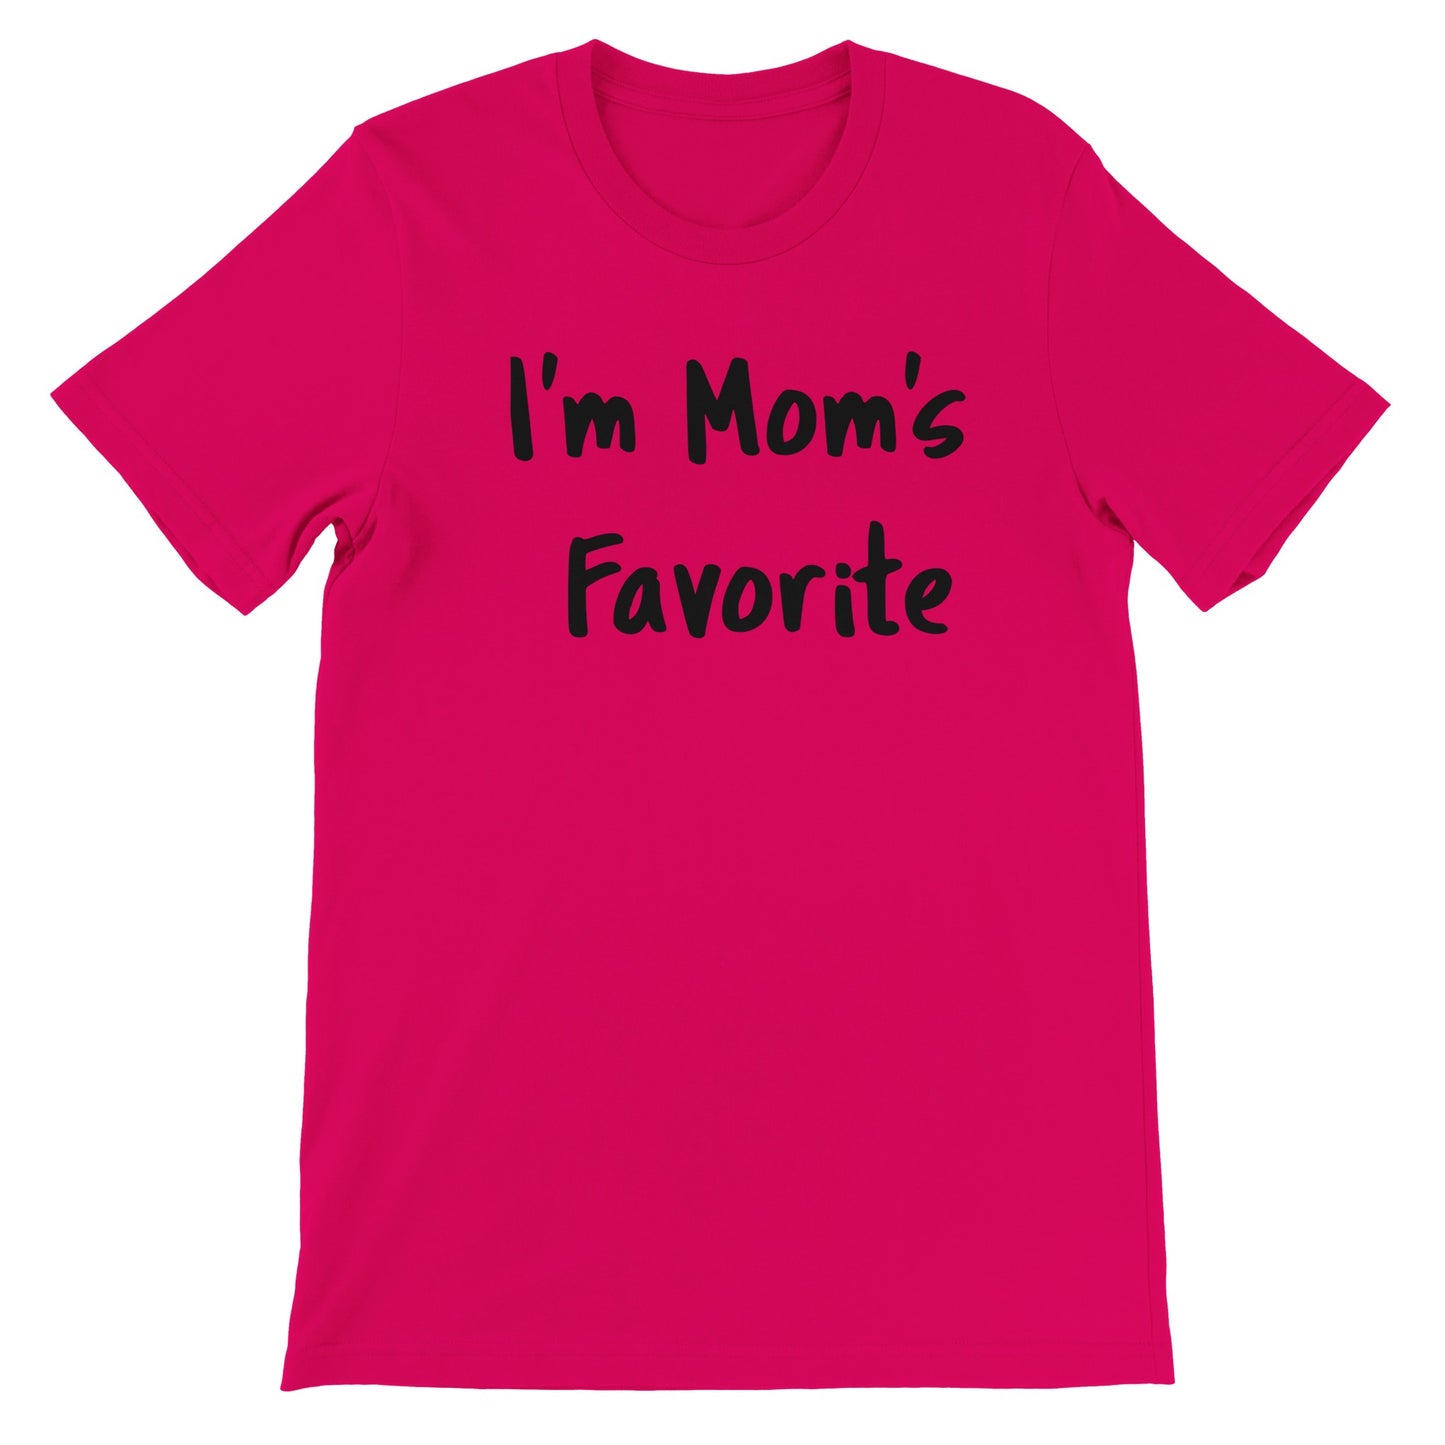 El favorito de mamá - Camiseta premium unisex con cuello redondo